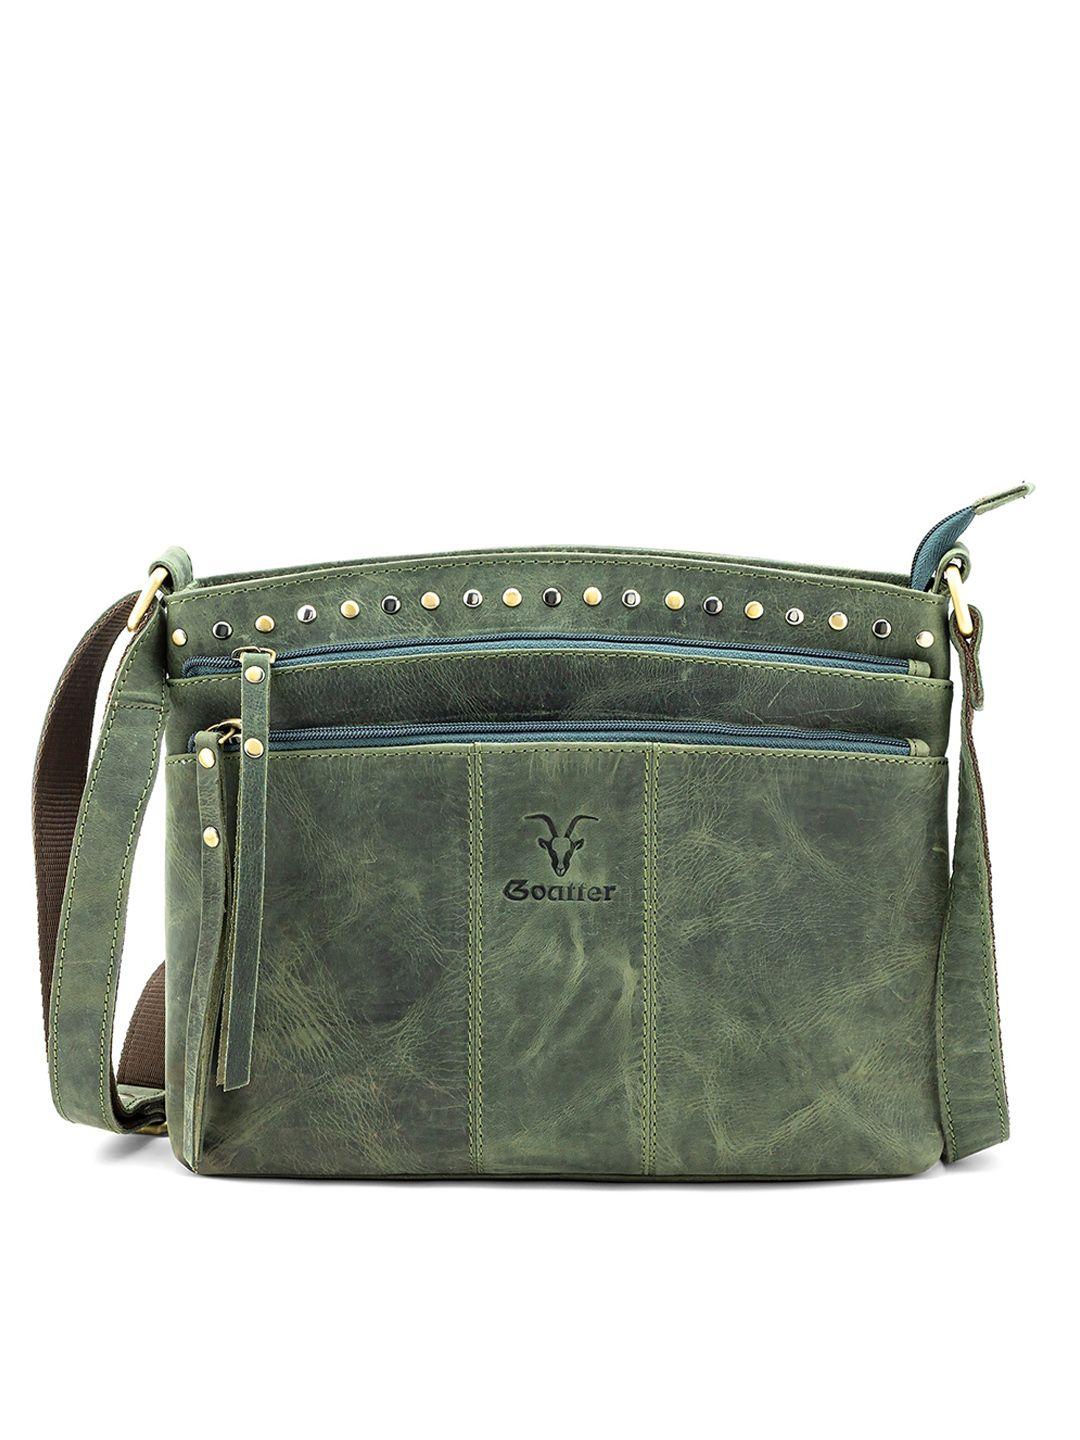 goatter green leather structured sling bag